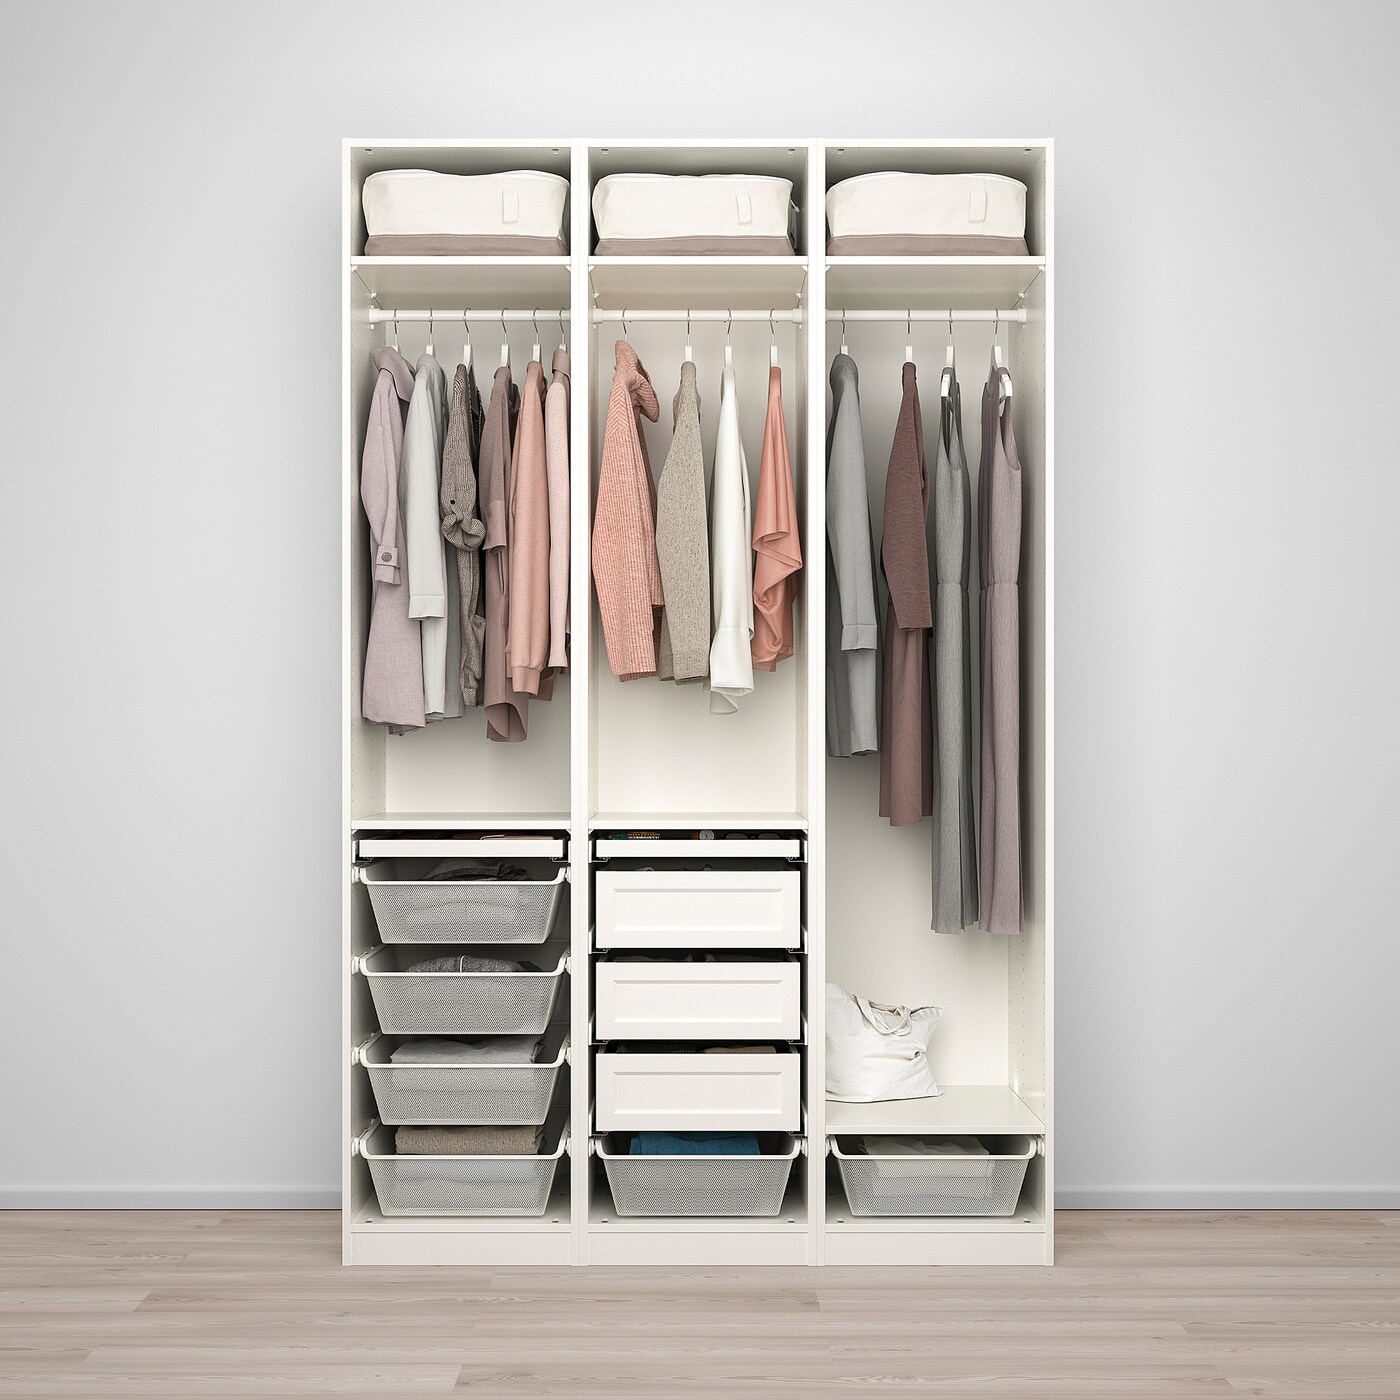 Гардеробы в икеа фото и цены: Гардеробные системы IKEA - купить модульные шкафы для гардеробной